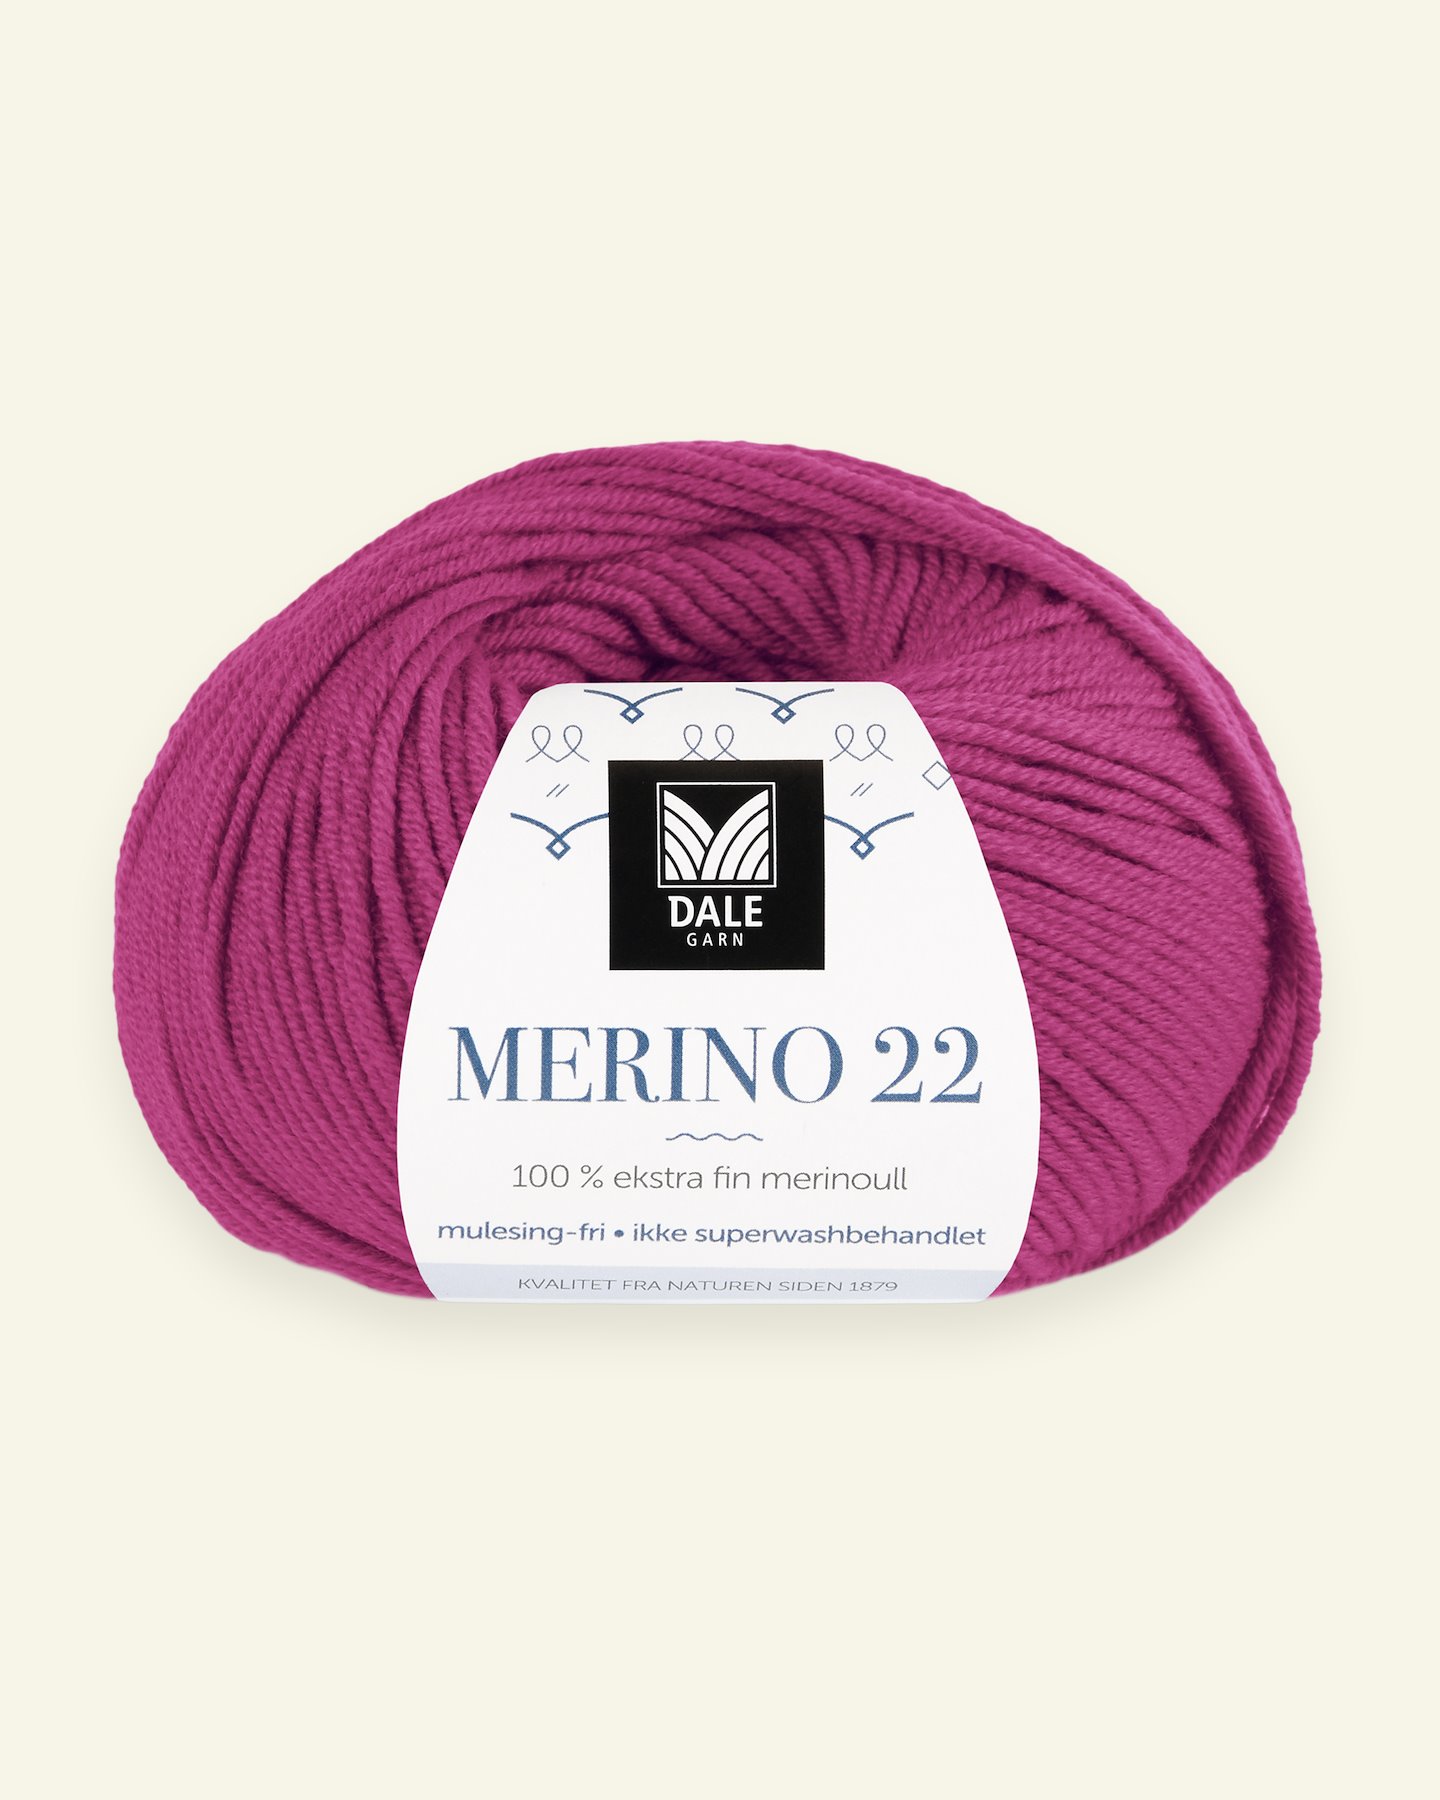 Dale Garn, 100% extra fine merino wool yarn, "Merino 22", pink 90000390_pack